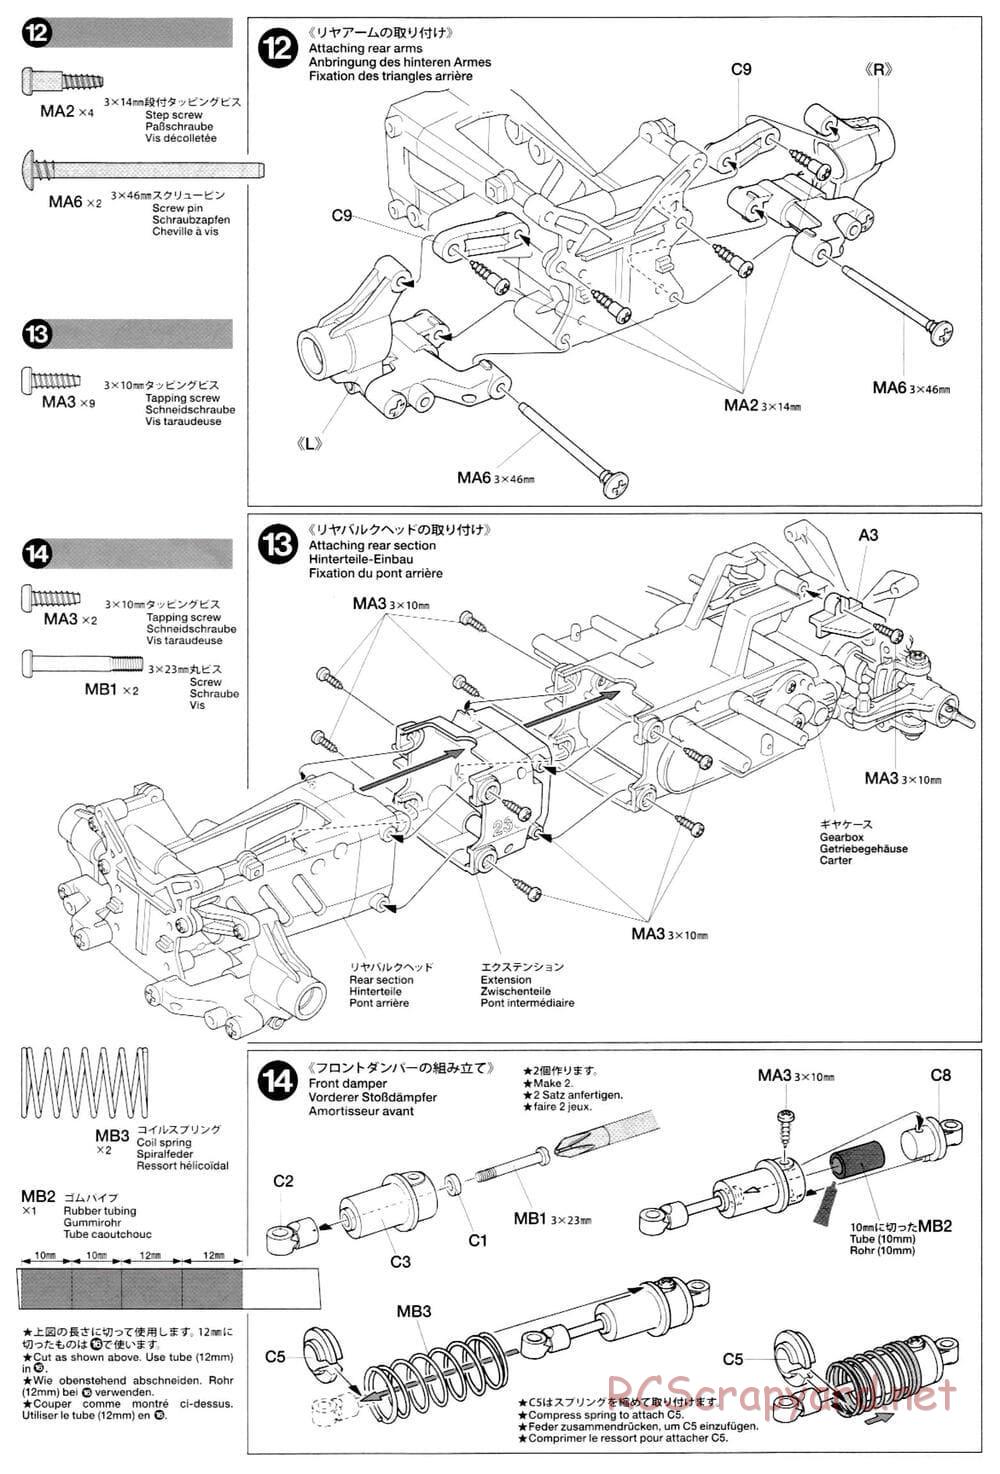 Tamiya - M-03L Chassis - Manual - Page 8